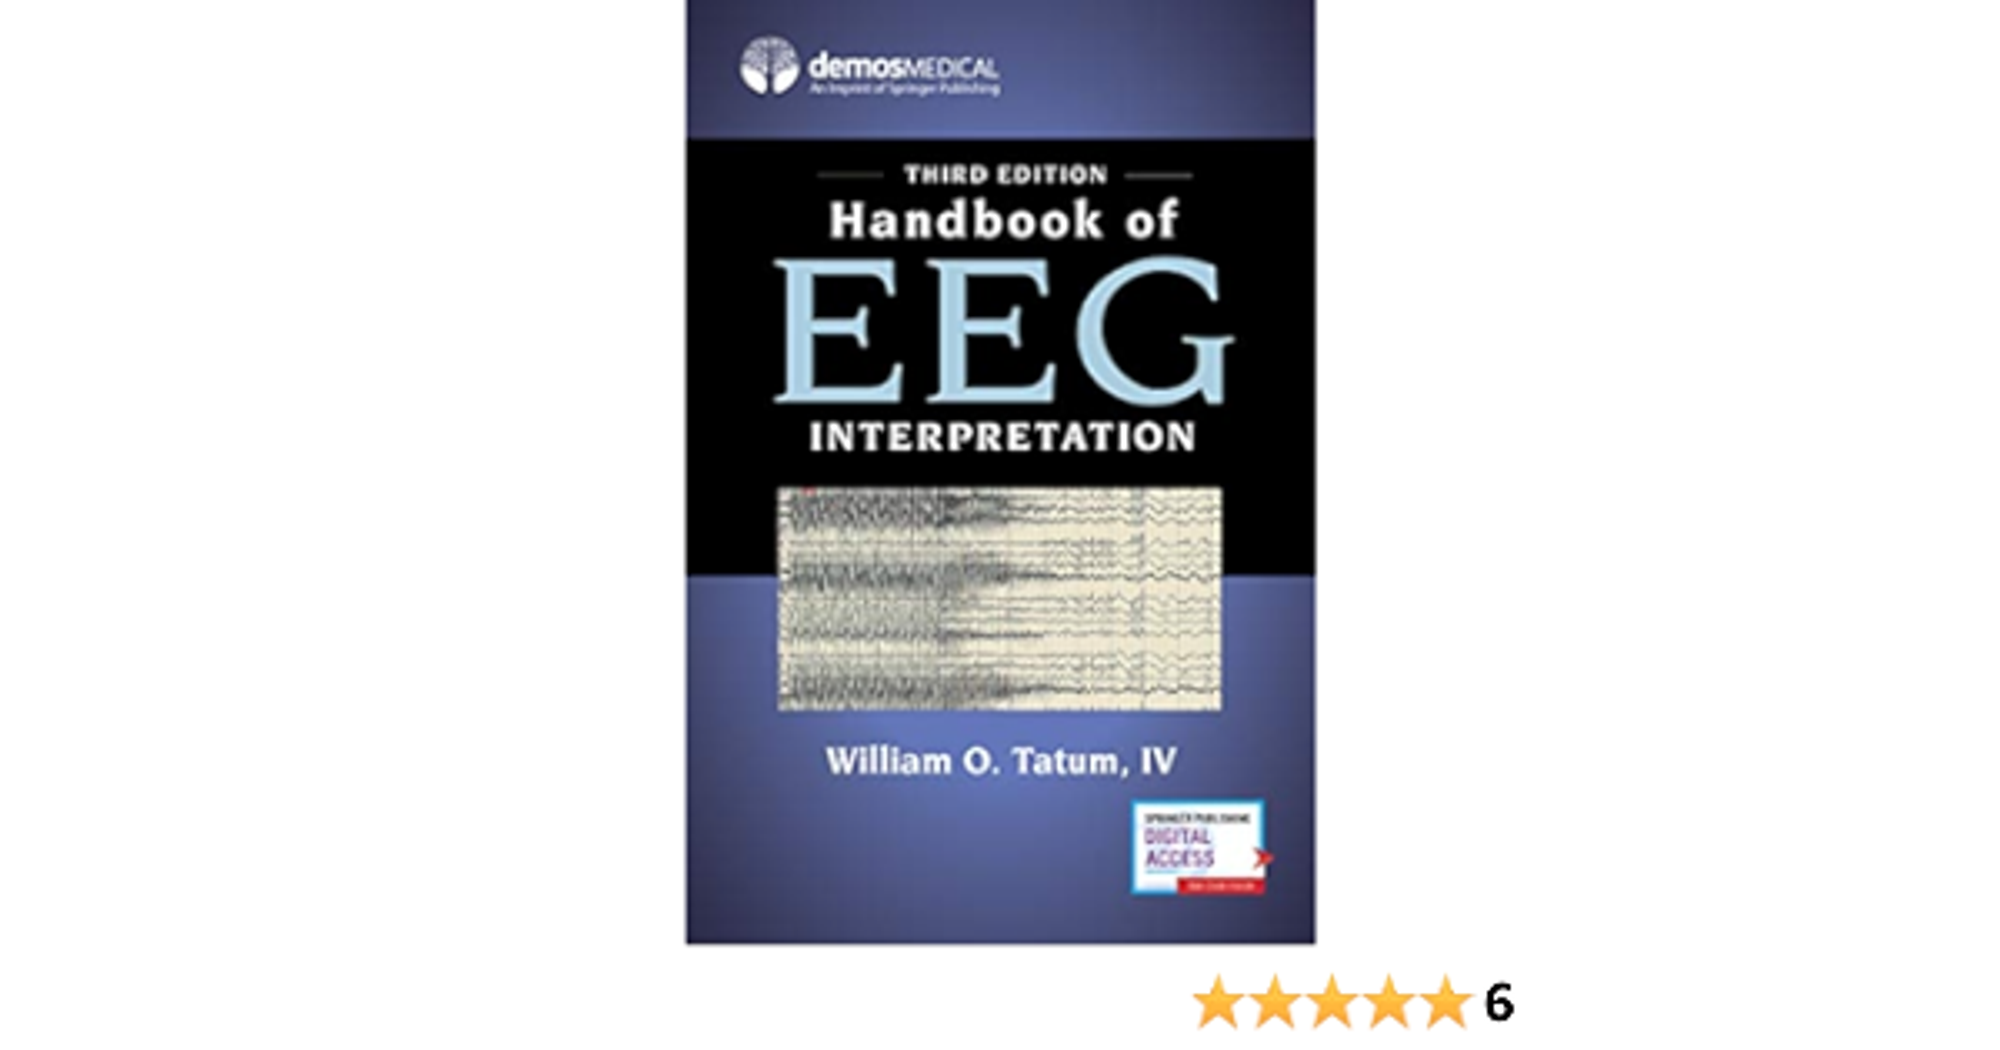 Handbook of EEG Interpretation, Third Edition â€" A Comprehensive EEG Book for Neurology Residents and Fellows, Clinicians, and Technologists